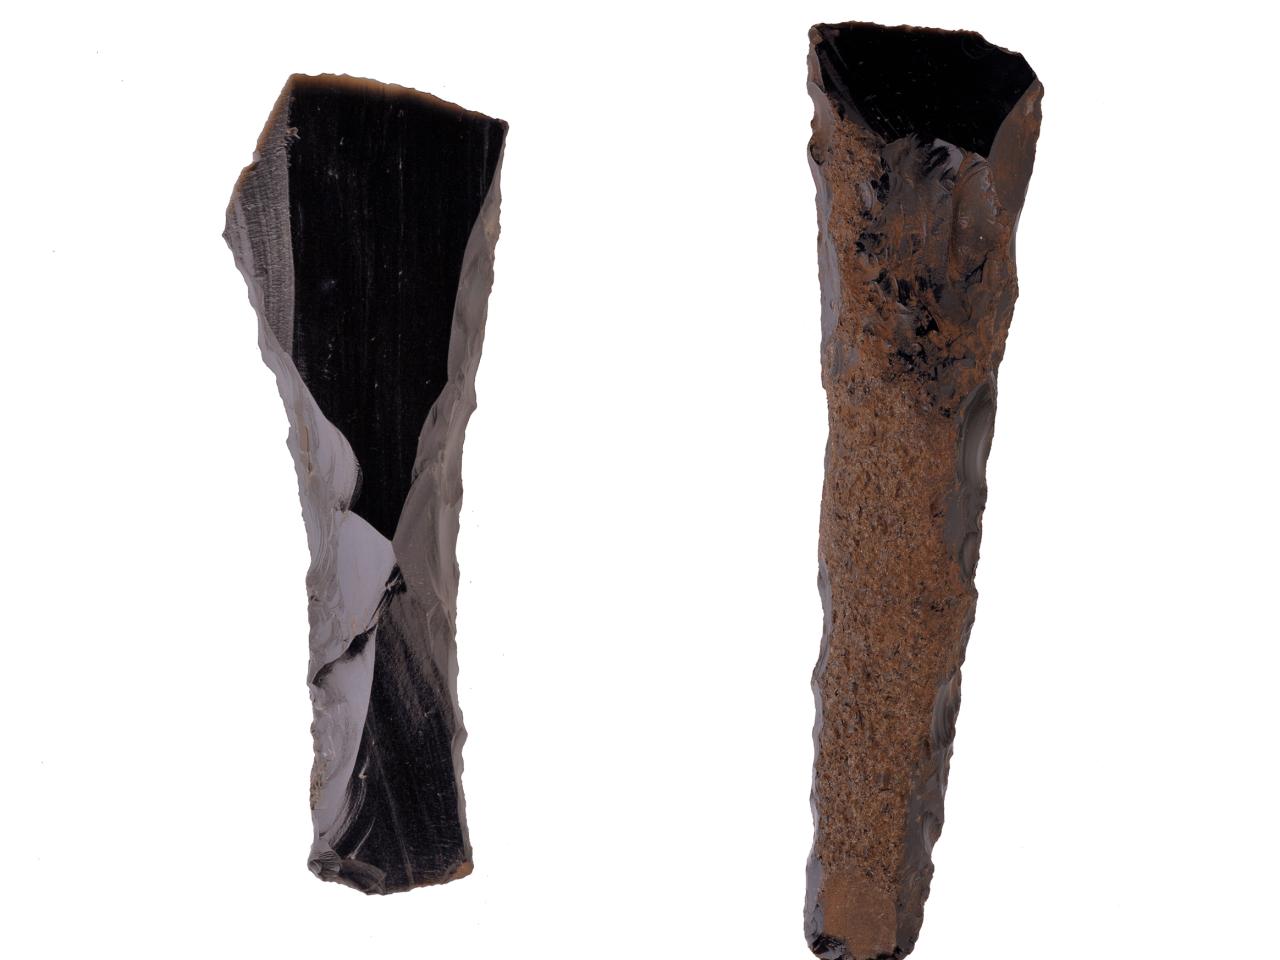 Cincel o Hoe de obsidiana en bisel, sin enmangue, evidencia de desbaste profundo